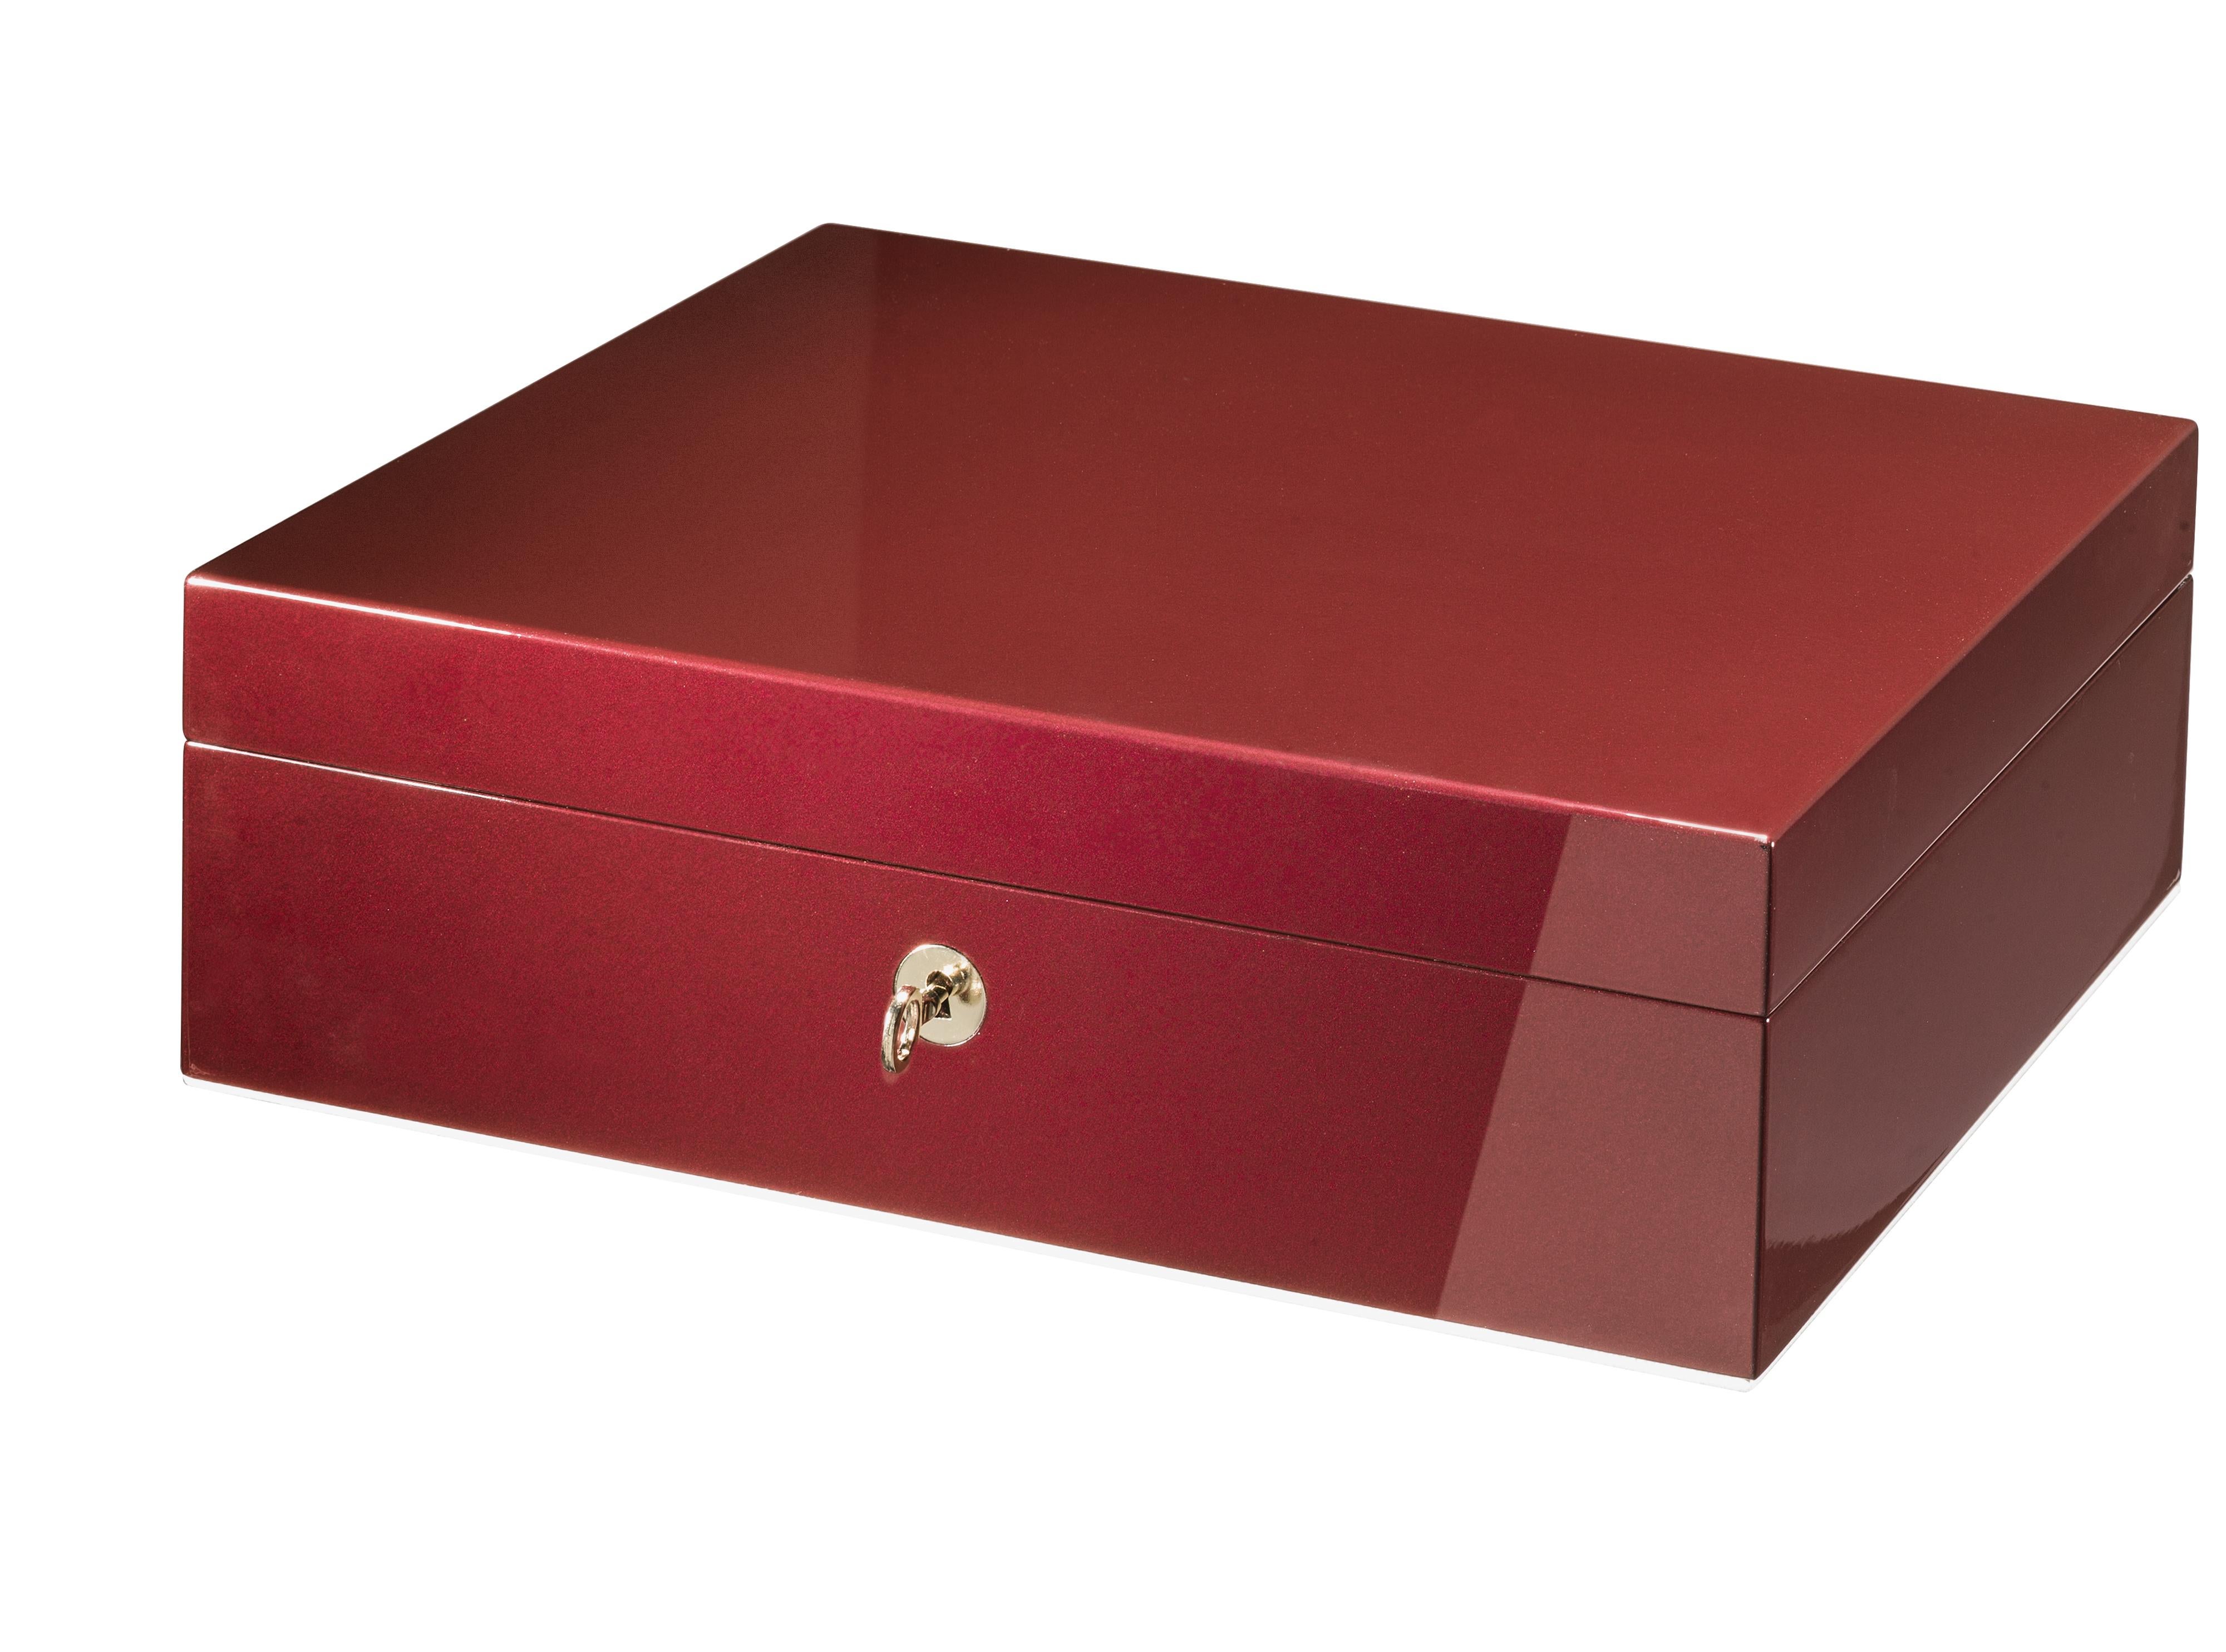 D'un design épuré et essentiel au style contemporain sophistiqué, cette boîte à bijoux se distingue par une superbe couleur rubis obtenue avec une finition en polyester brossé et poli. Fabriqué à la main en bois, il est enrichi de détails